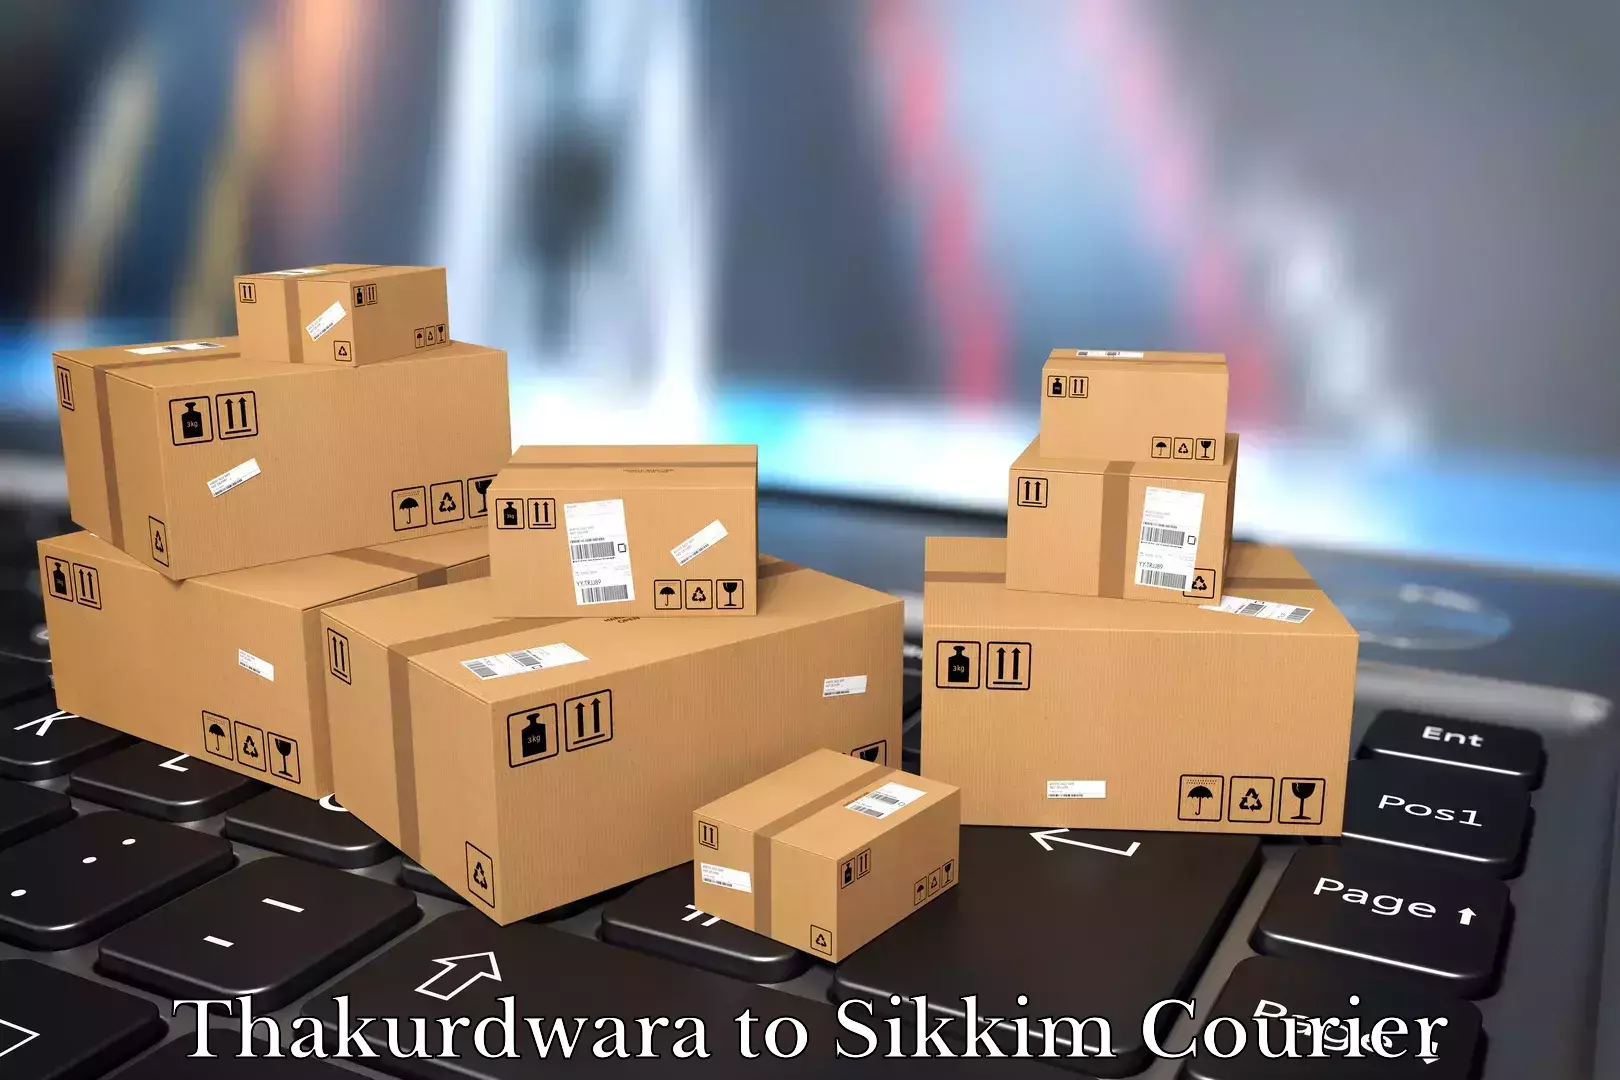 Professional packing services Thakurdwara to Sikkim